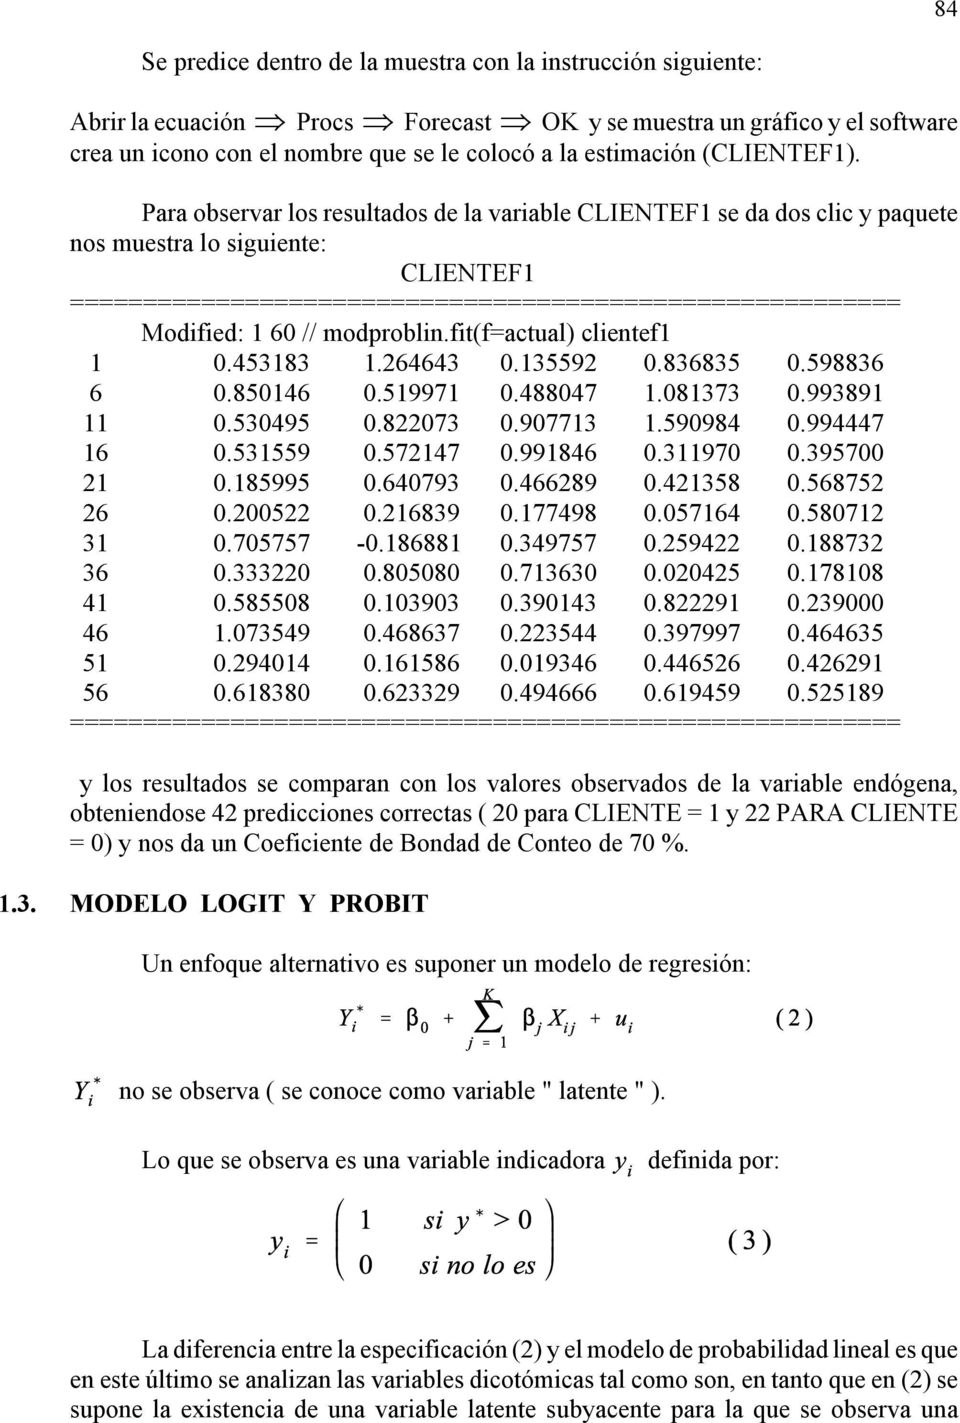 Para observar los resultados de la varable CLIENTEF1 se da dos clc y paquete nos muestra lo sguente: CLIENTEF1 ========================================================= Modfed: 1 60 // modprobln.